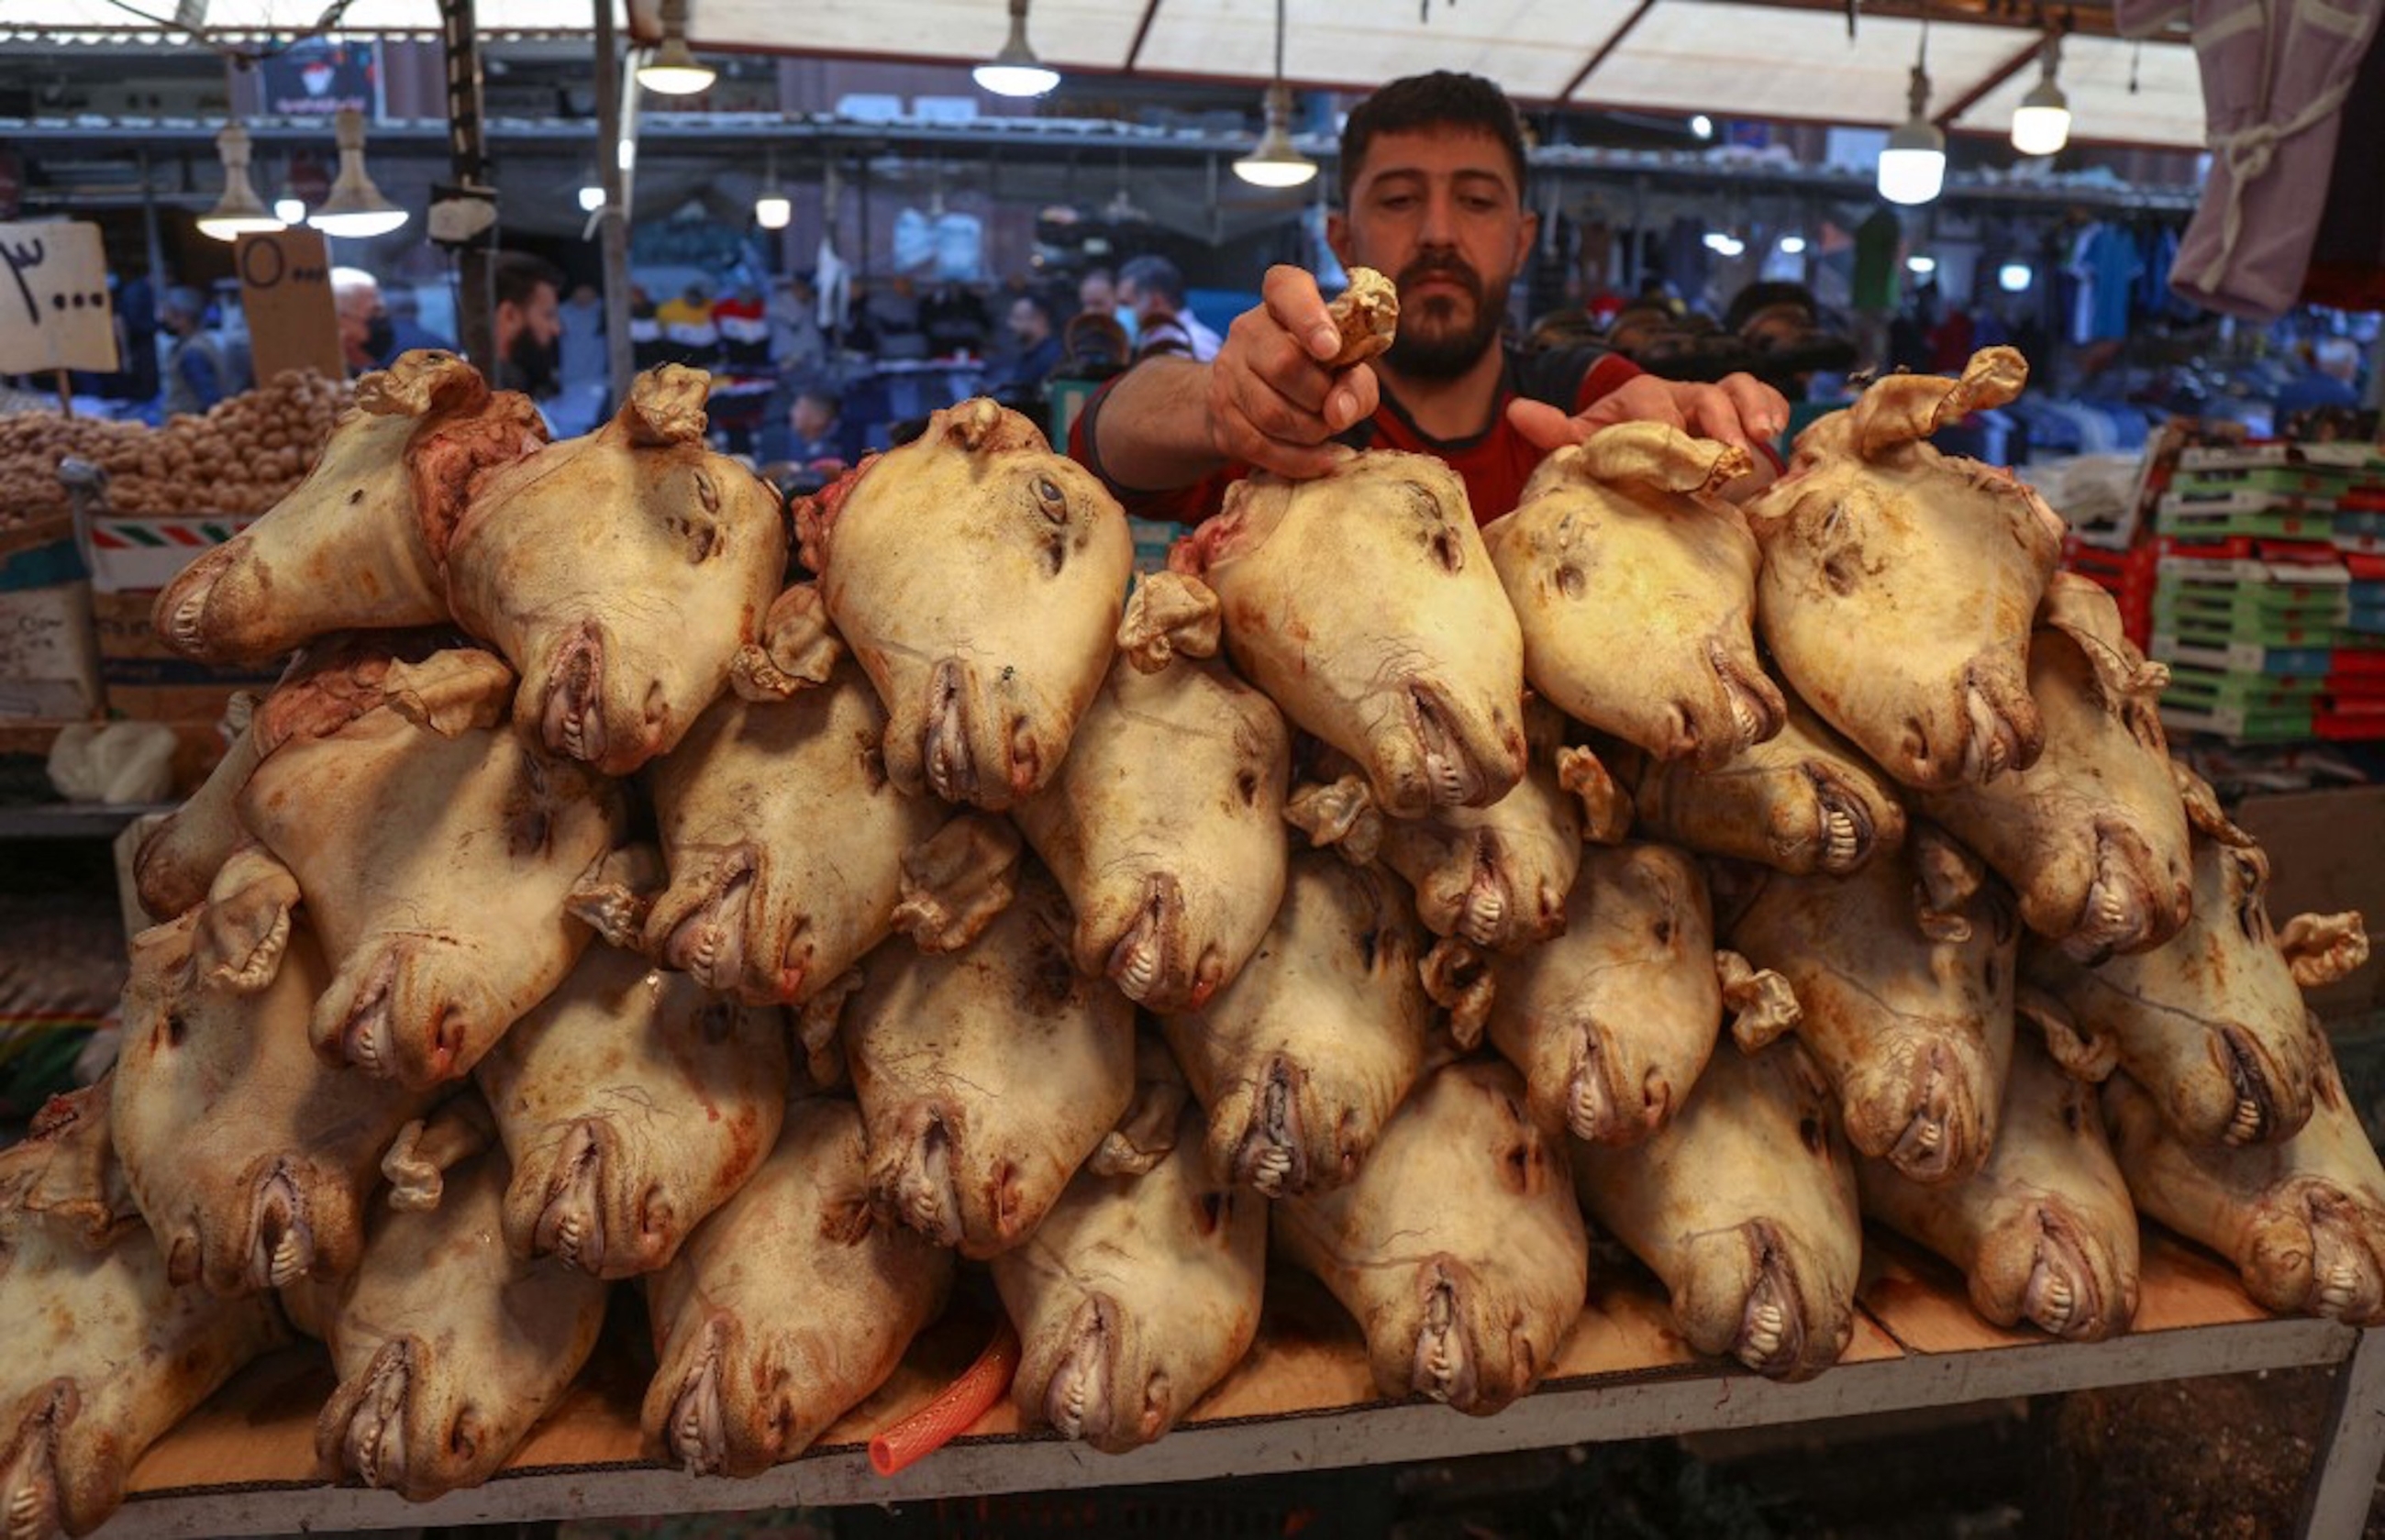 IRAK. Un boucher kurde irakien empile des têtes de moutons pour les vendre sur un marché d’Erbil, le 15 avril 2021 (AFP)